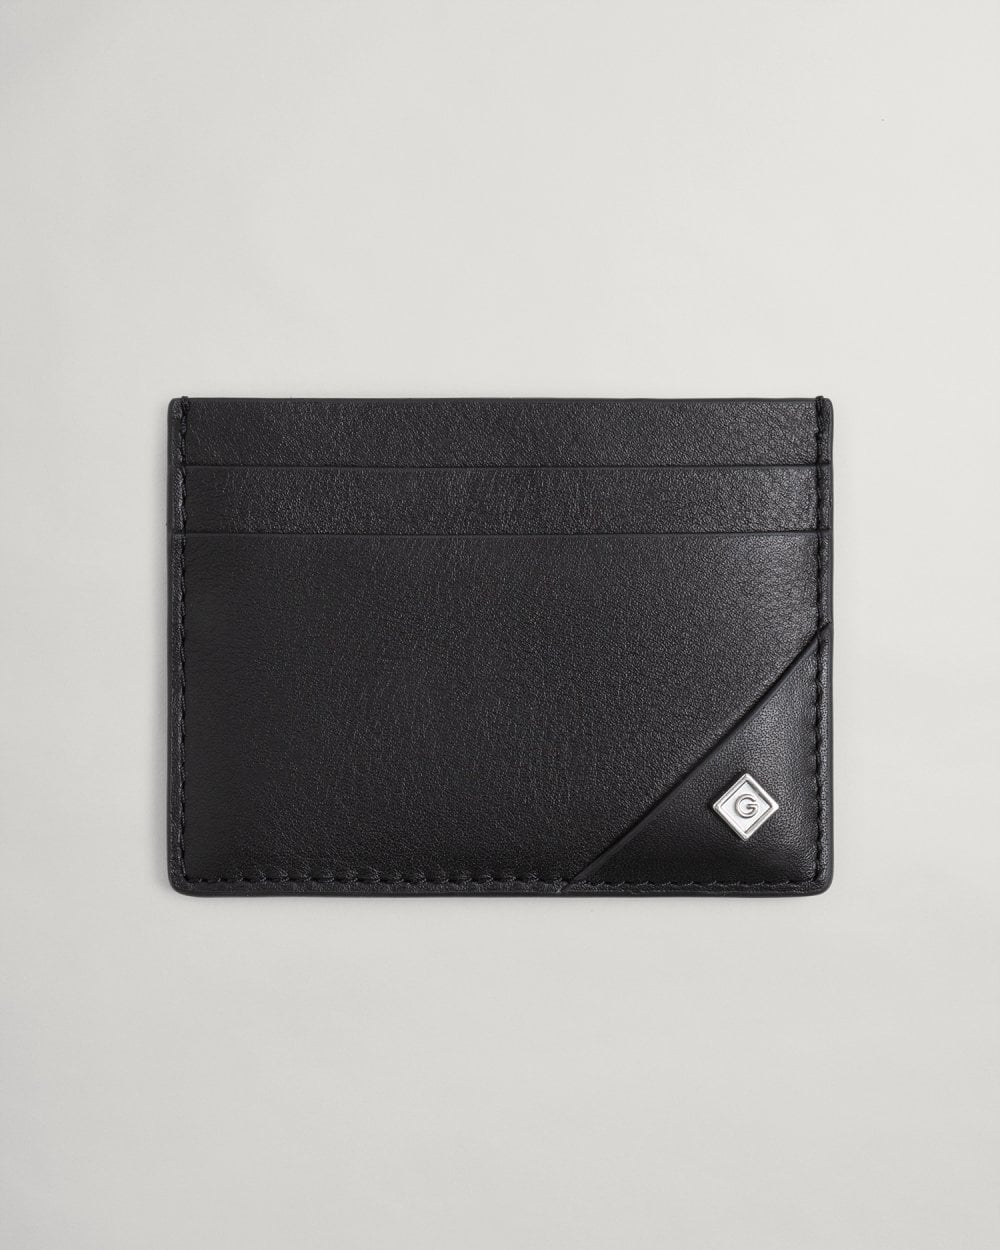 GANT CARD HOLDER UNISEX - Wallet - black - Zalando.de